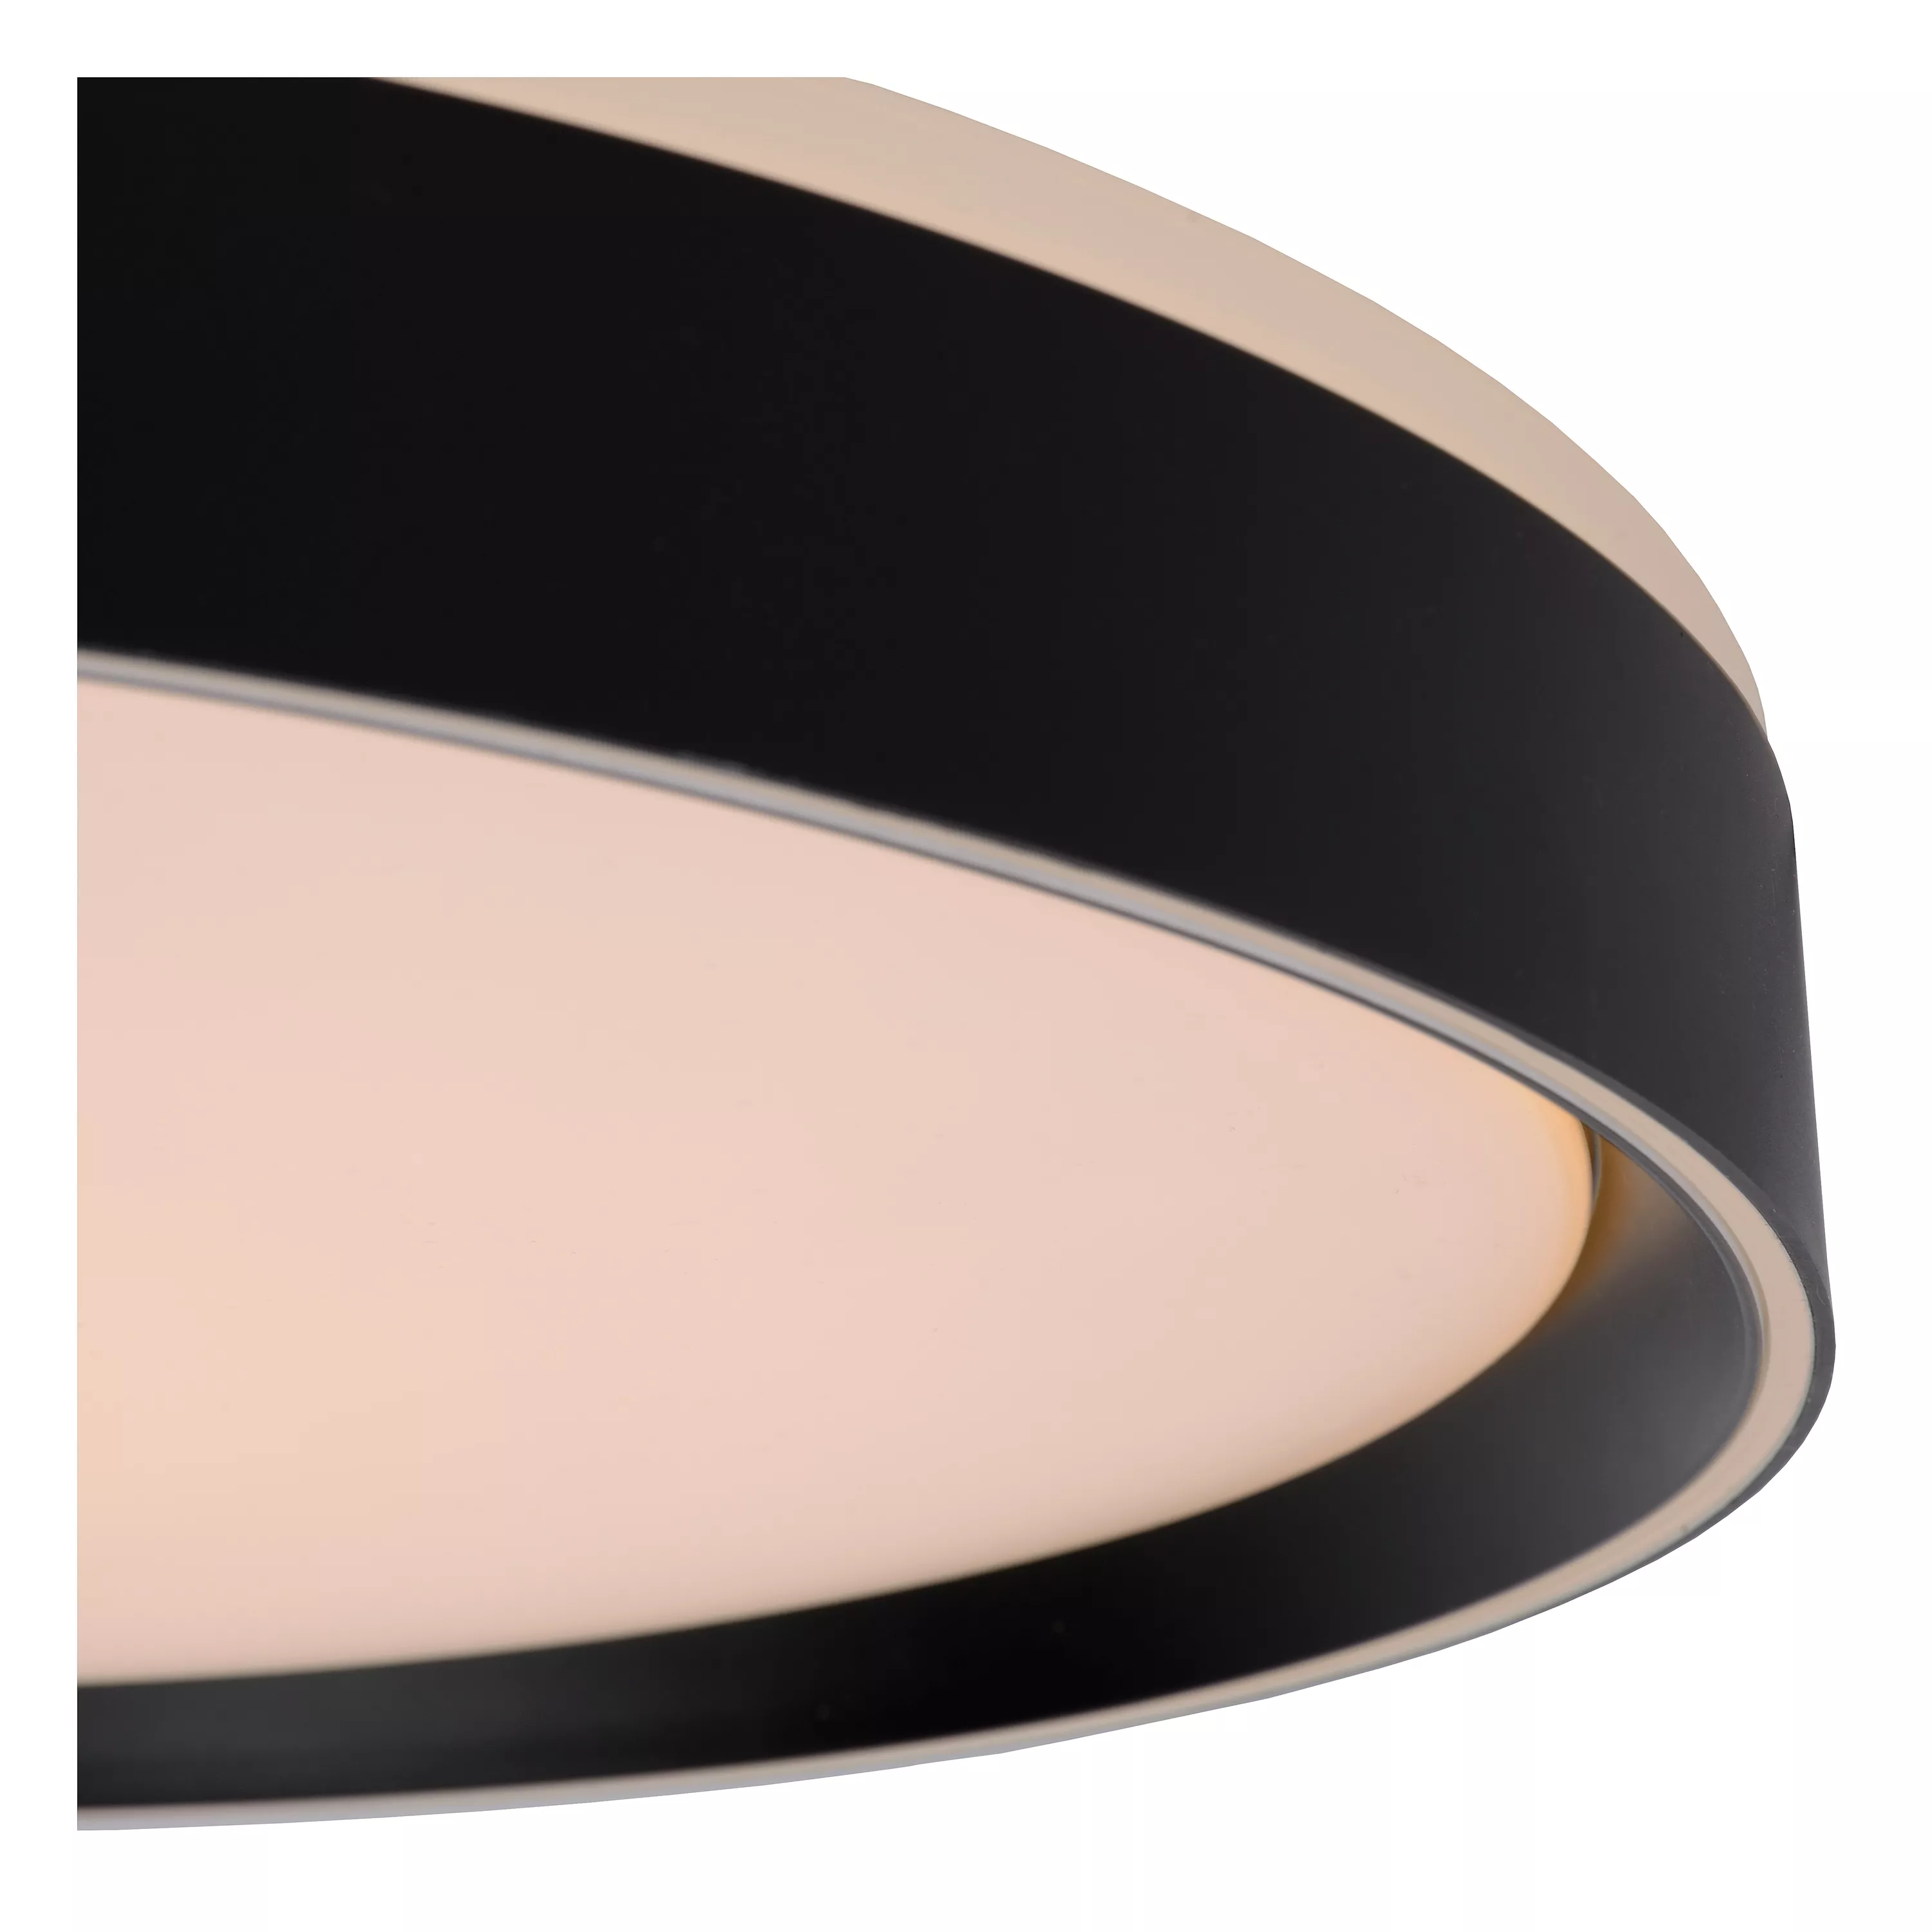 Moderní stropní svítidlo Nuria v černém provedení s 3stupňovým stmívačem je ideálním pomocníkem do kuchyně nebo obývacího pokoje.